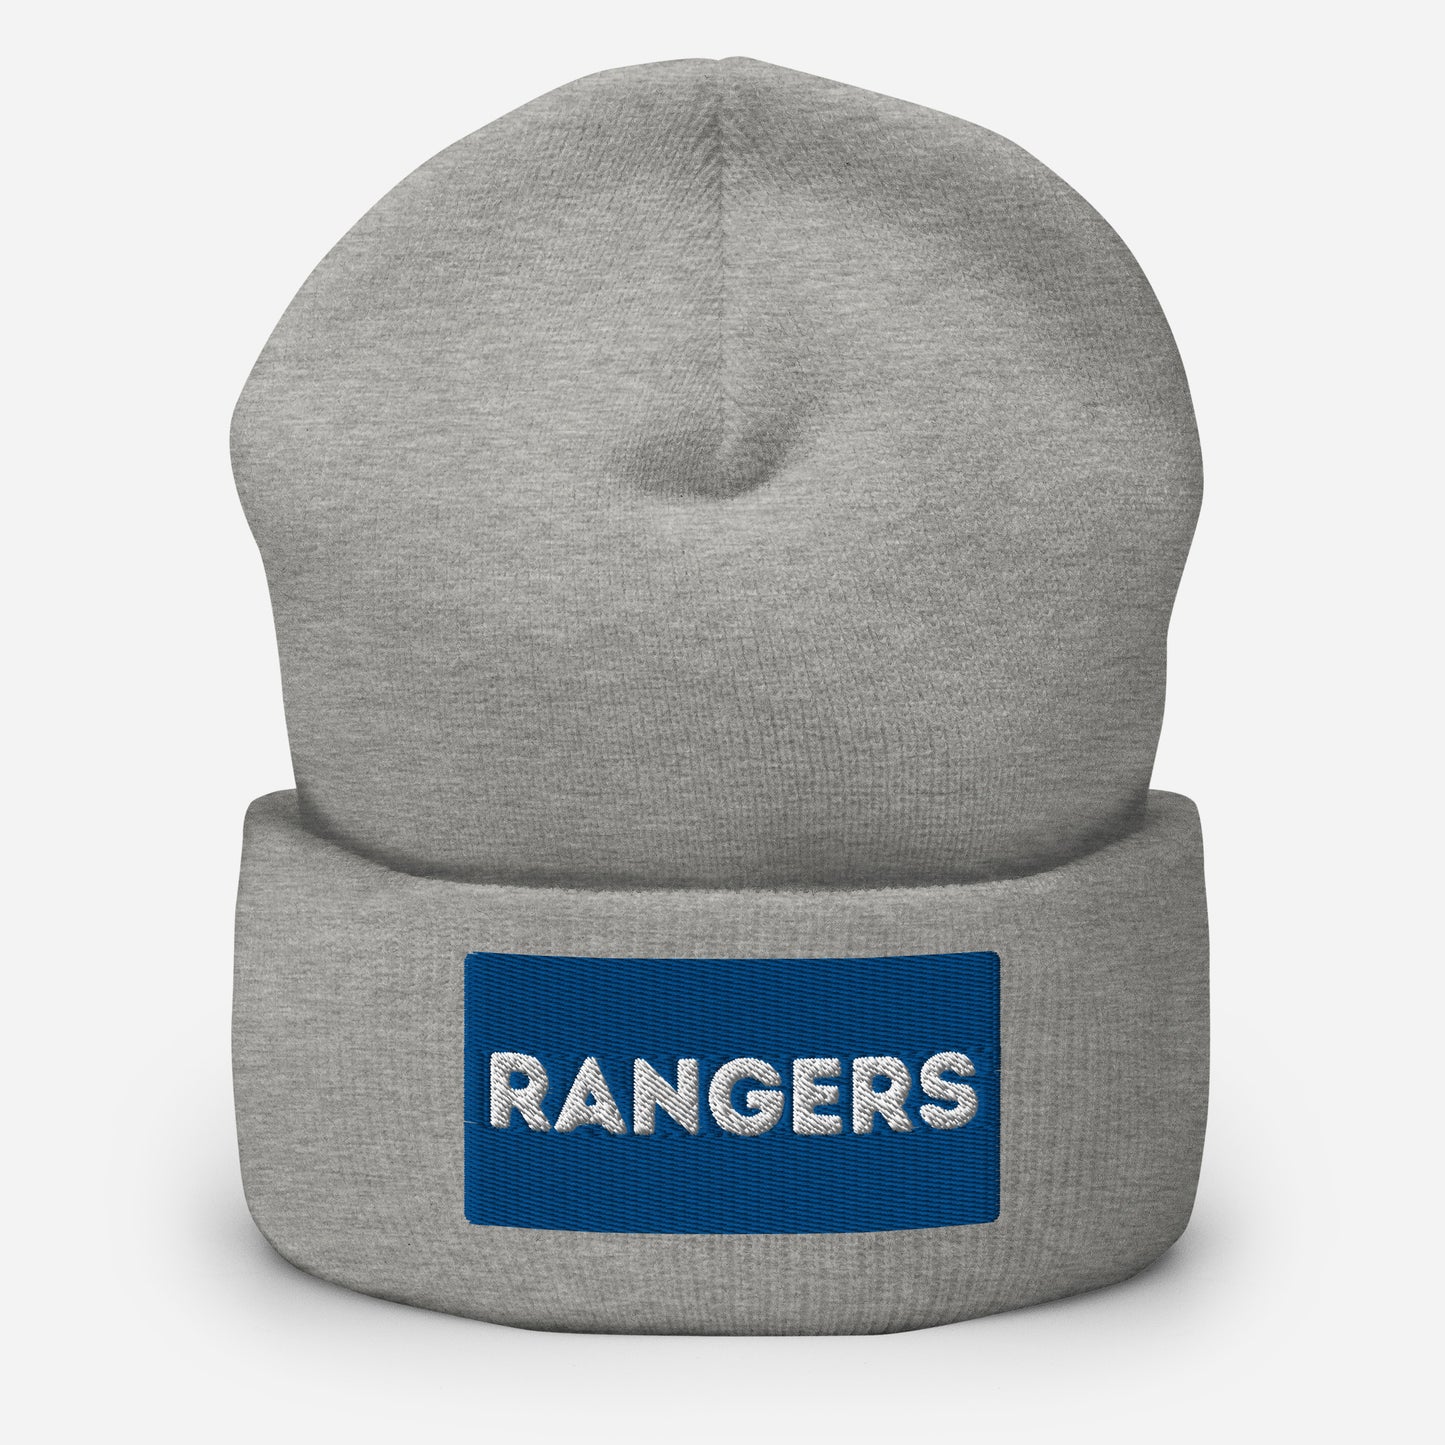 Rangers Cuffed Beanie Hat